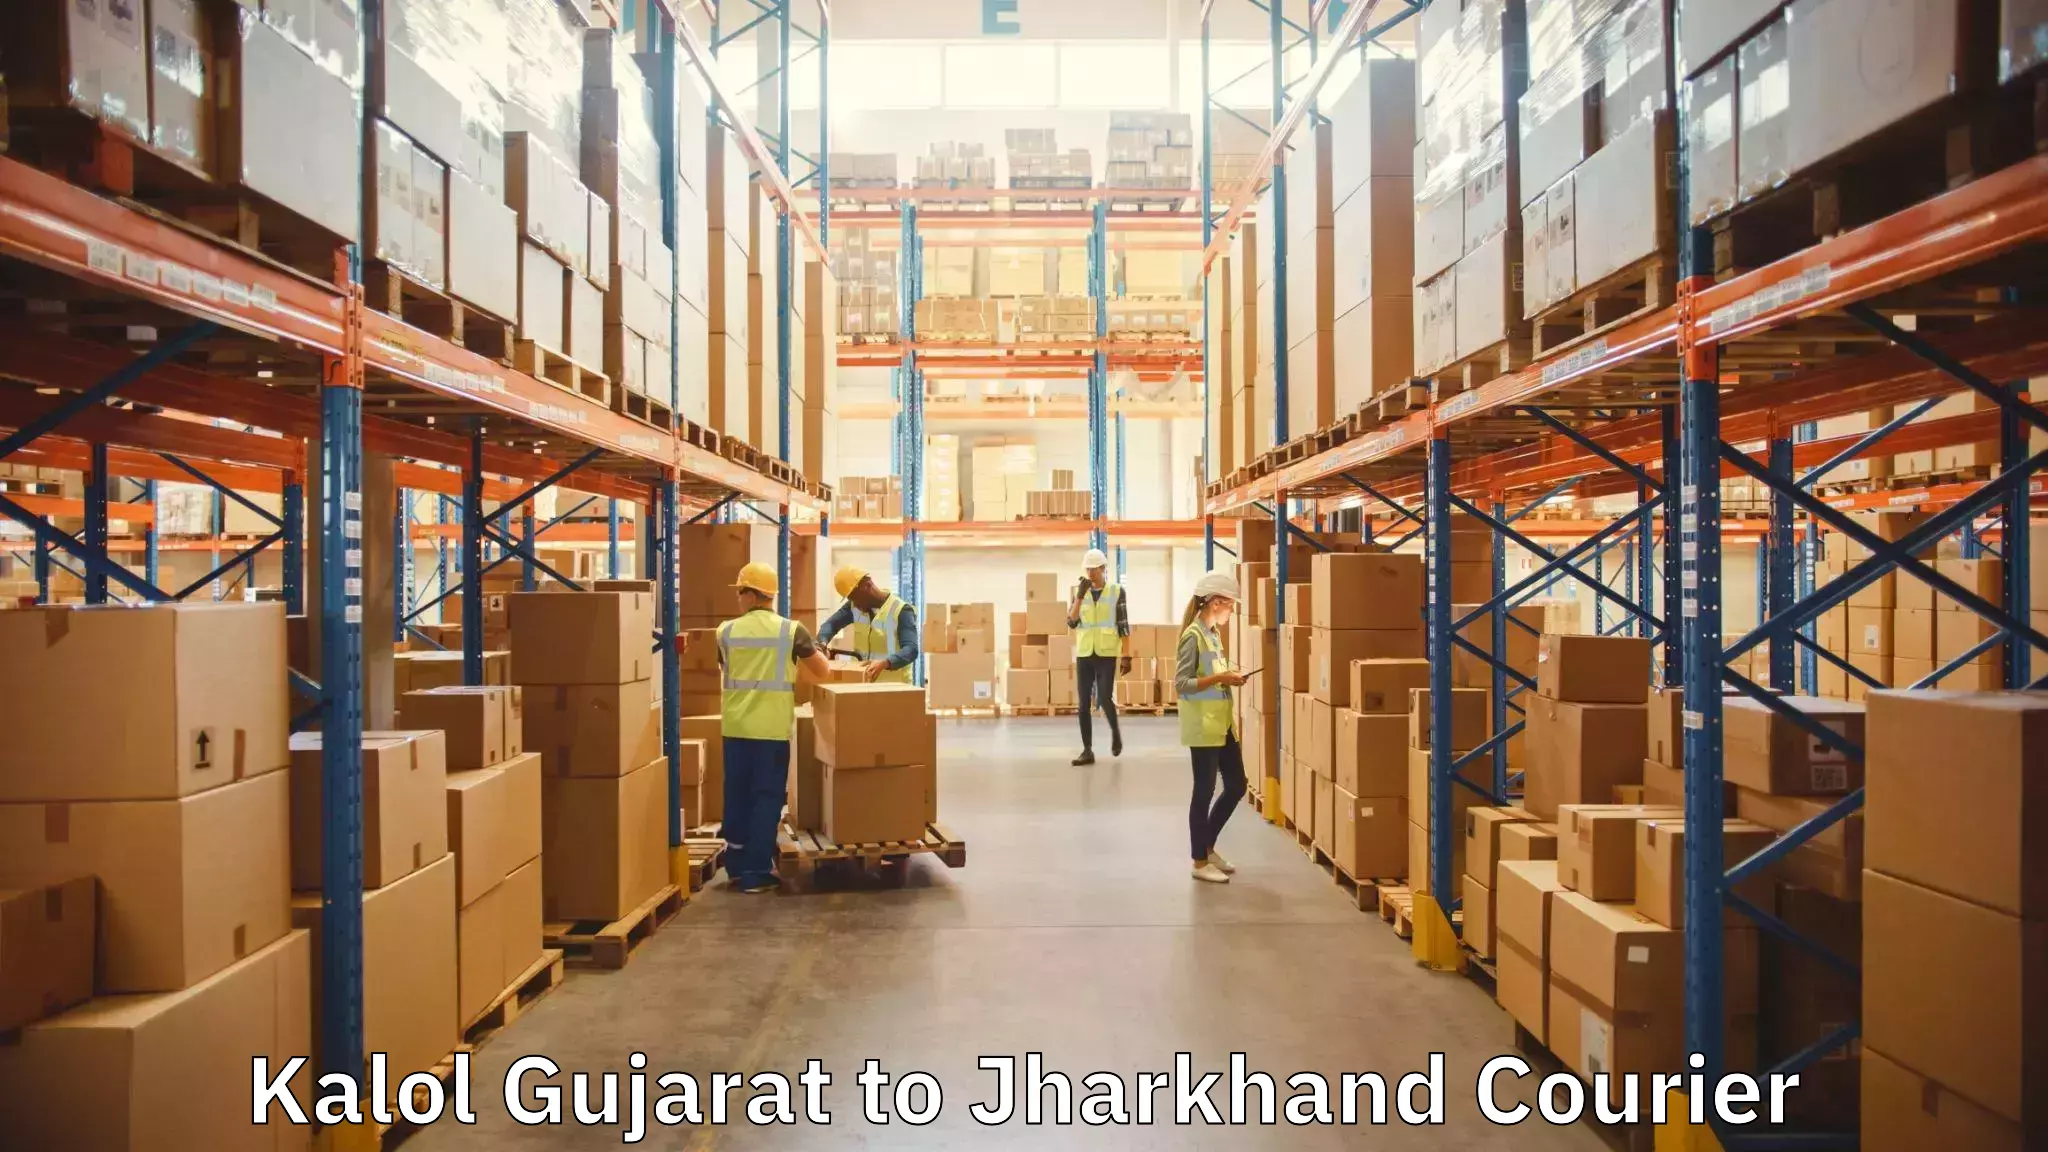 Furniture delivery service Kalol Gujarat to Godda